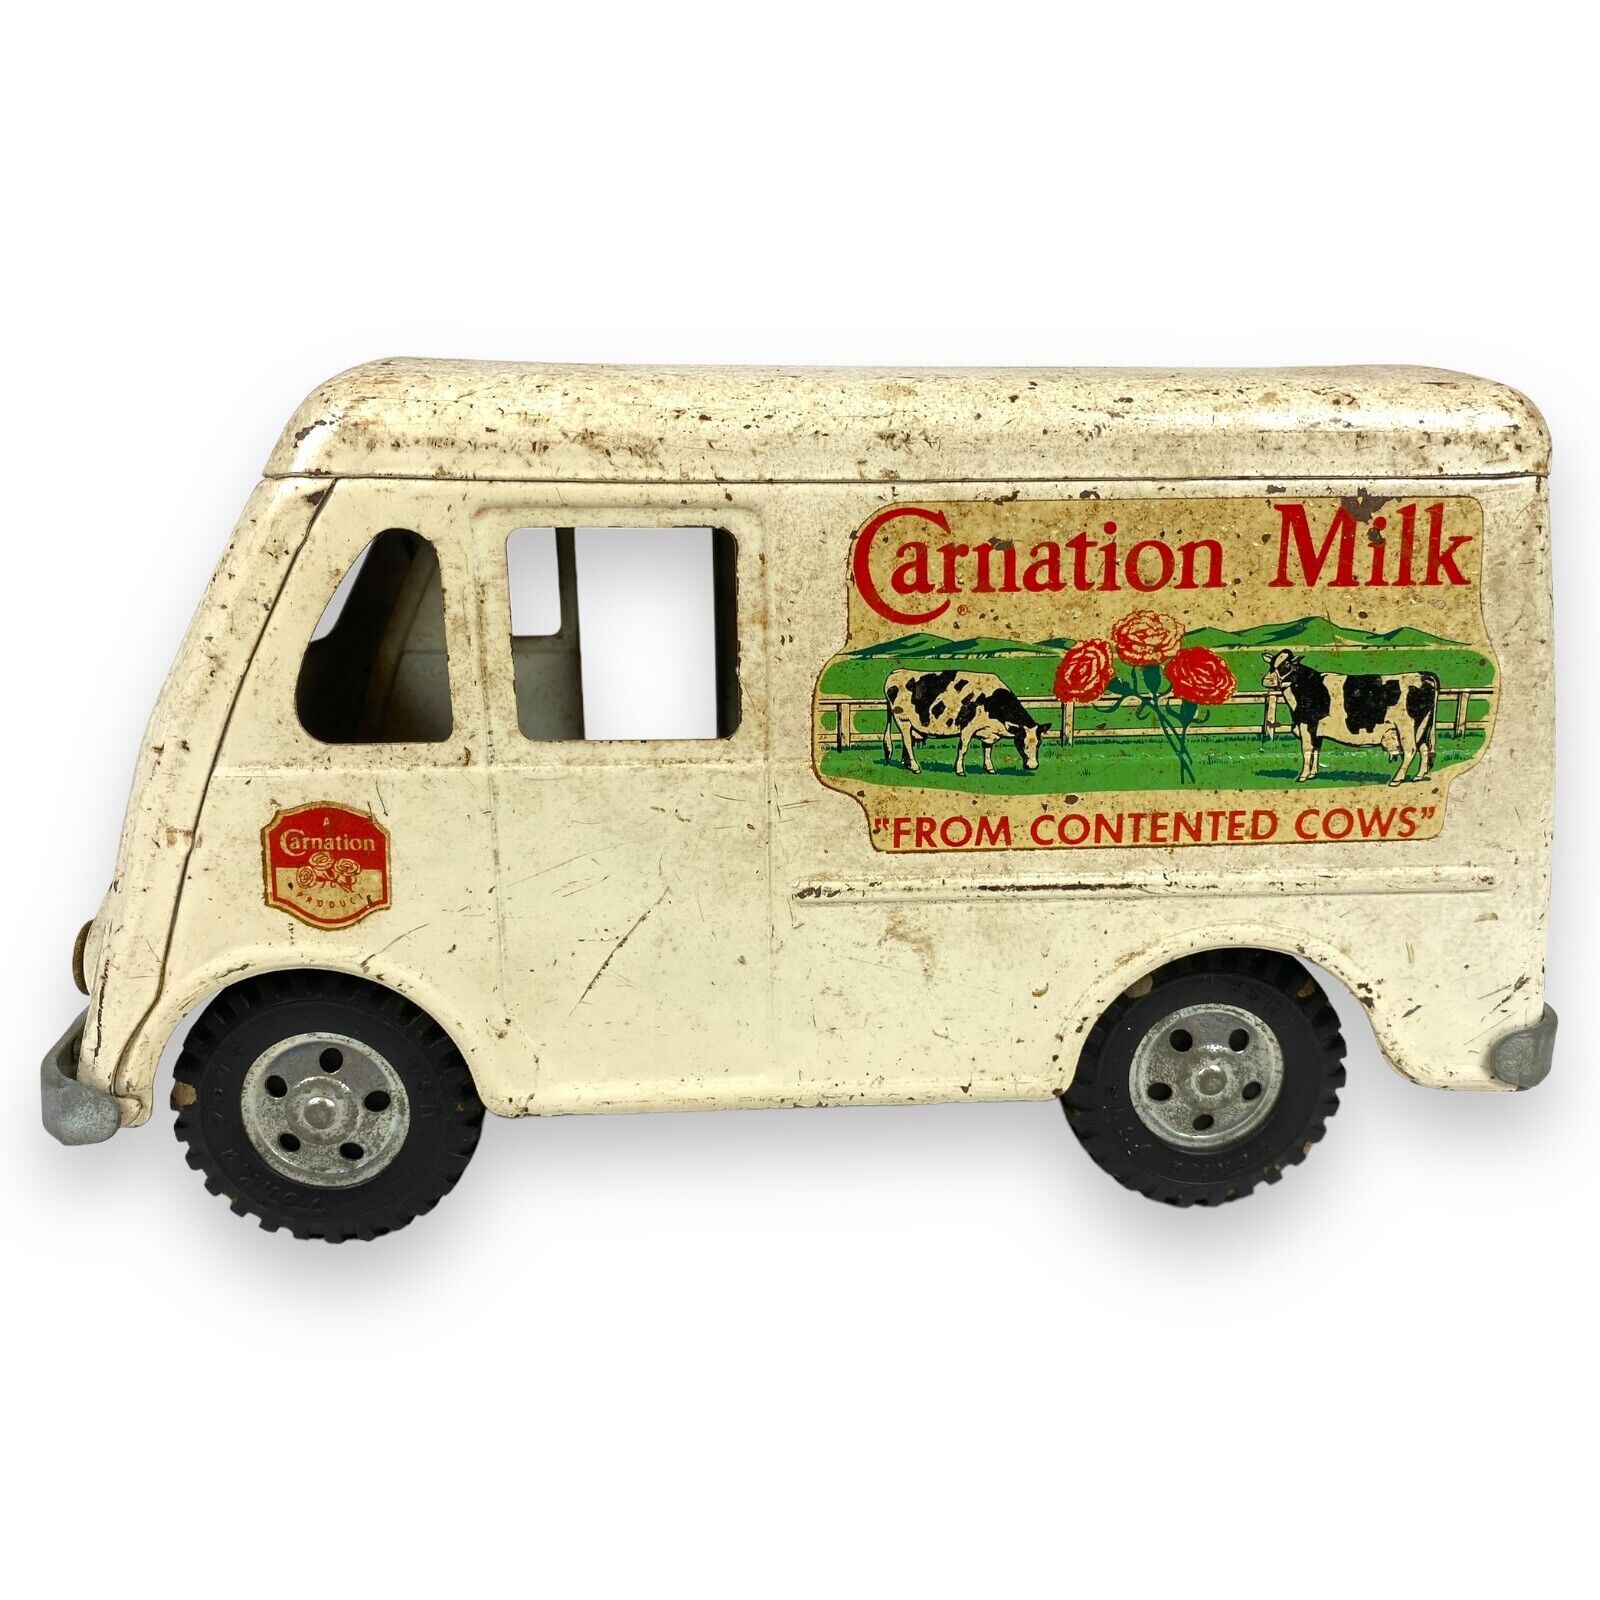 Vintage Tonka 1955 Carnation Milk Metro Pressed Steel Toy Truck Van #750-5